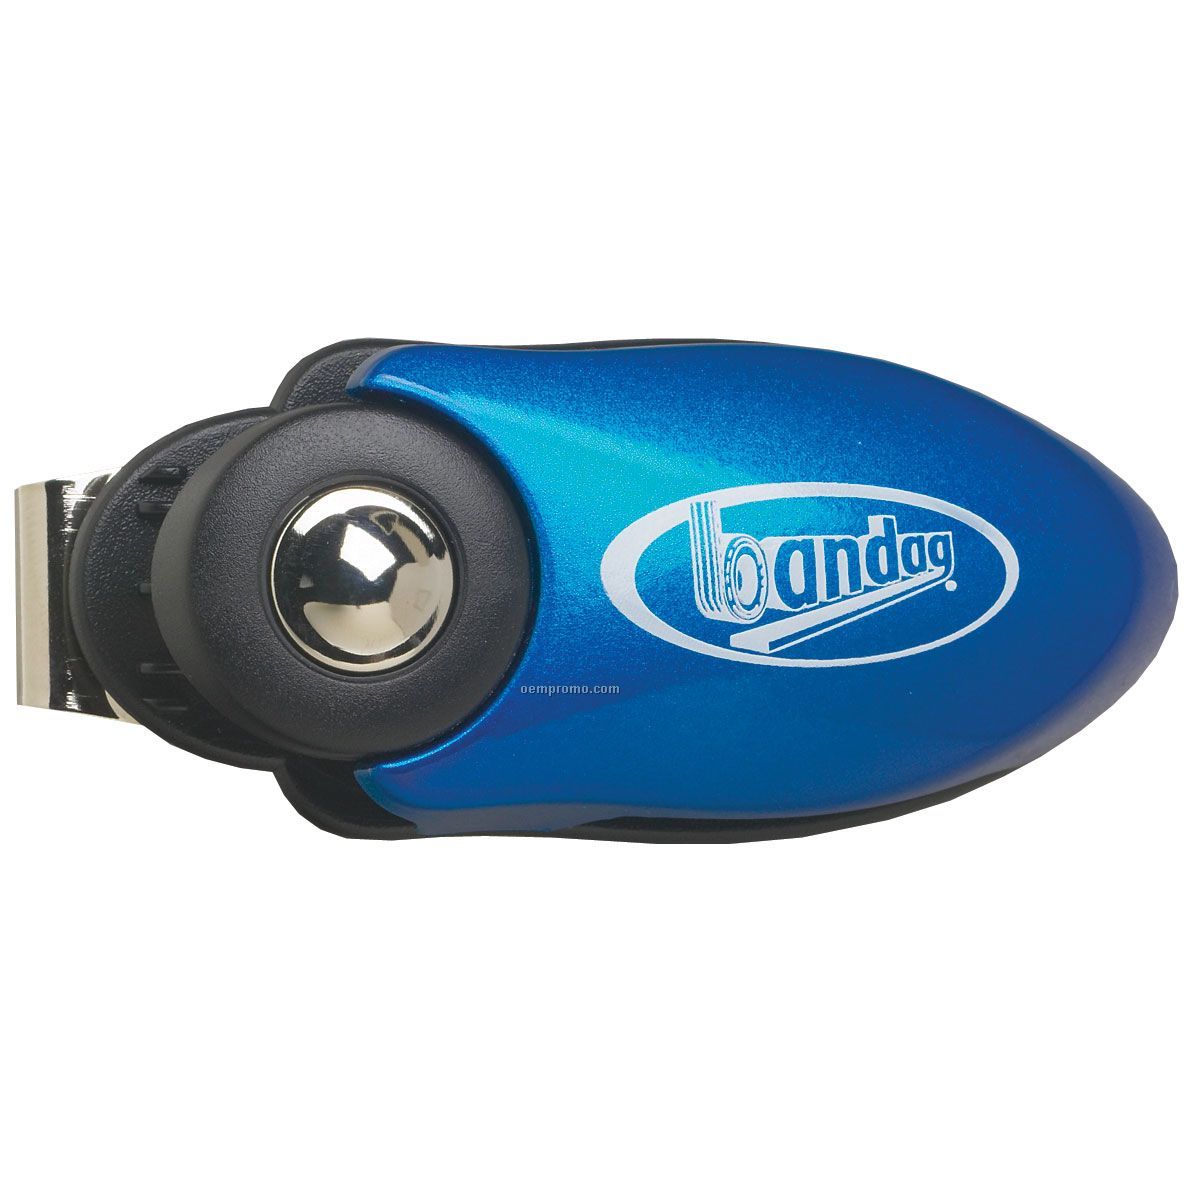 Handiclip III Car Visor Clip & Glasses Holder